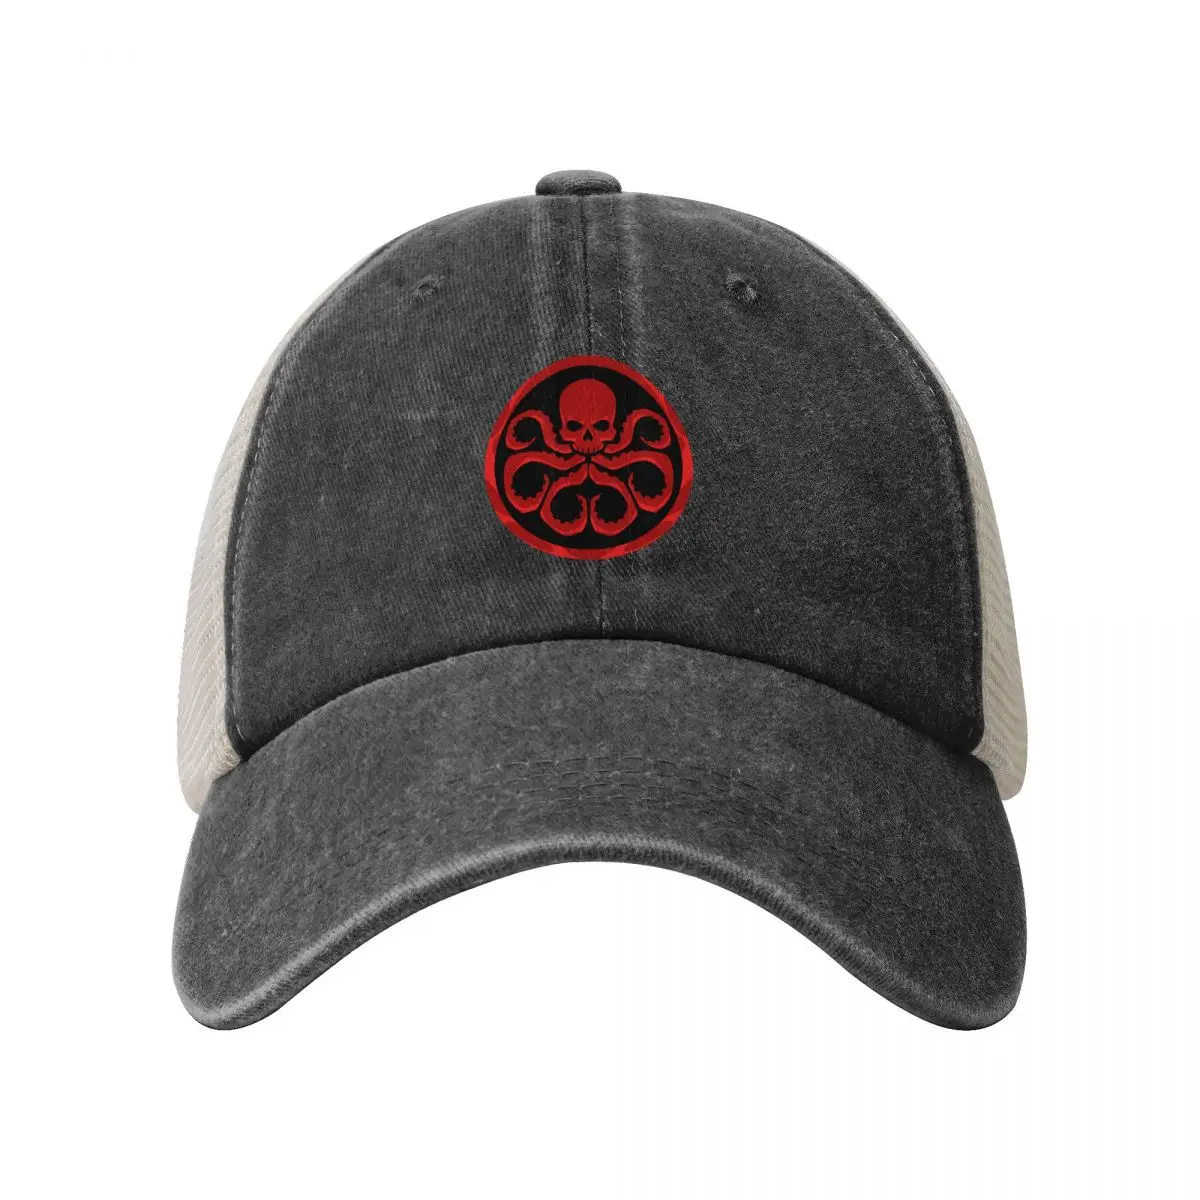 Hail Hydra 카우보이 메쉬 야구 모자, 남성 스트리트웨어, 자외선 차단 모자, 여성